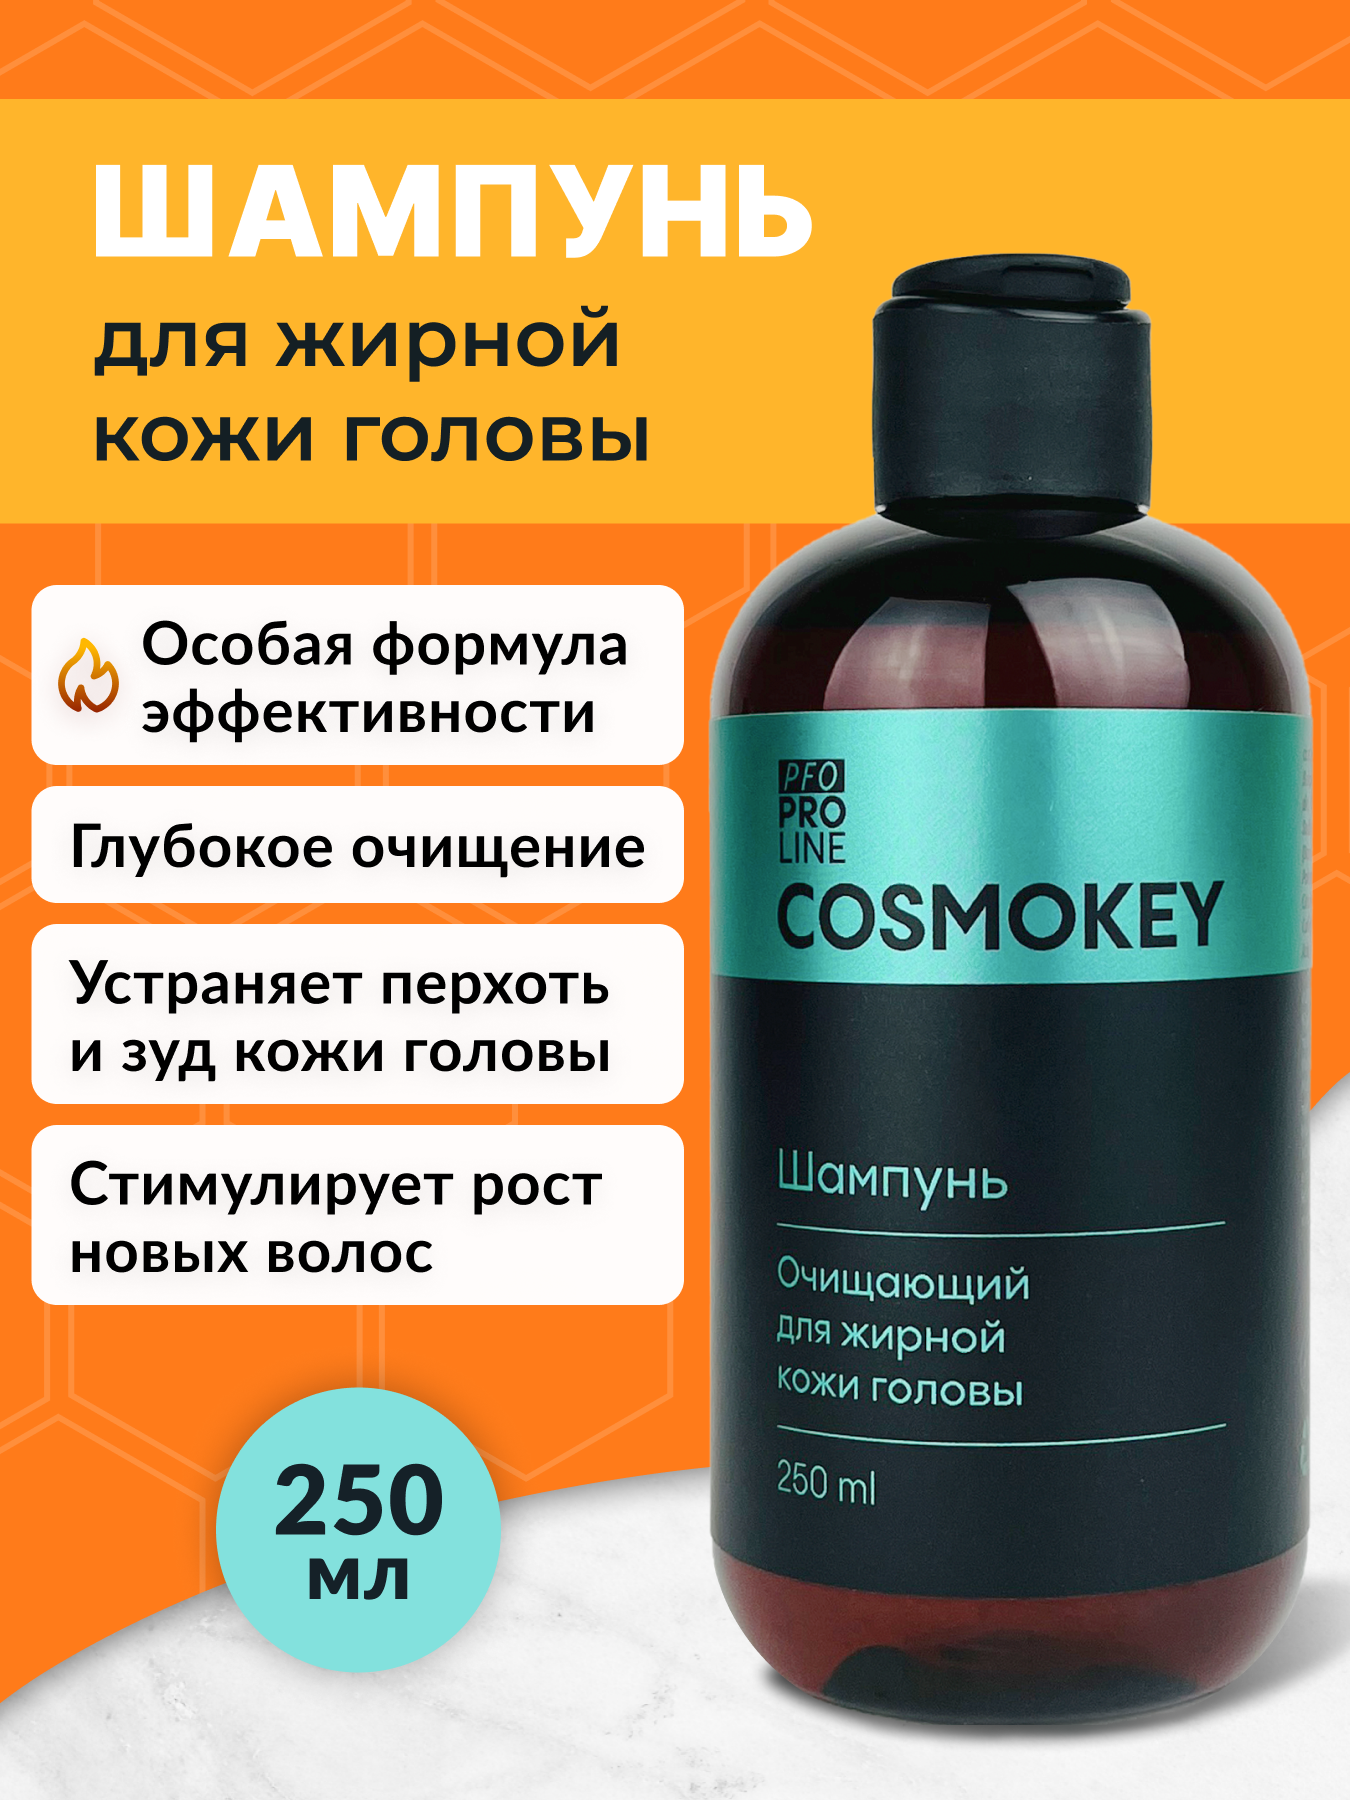 Шампунь Cosmokey очищающий для жирной кожи головы, 250 мл